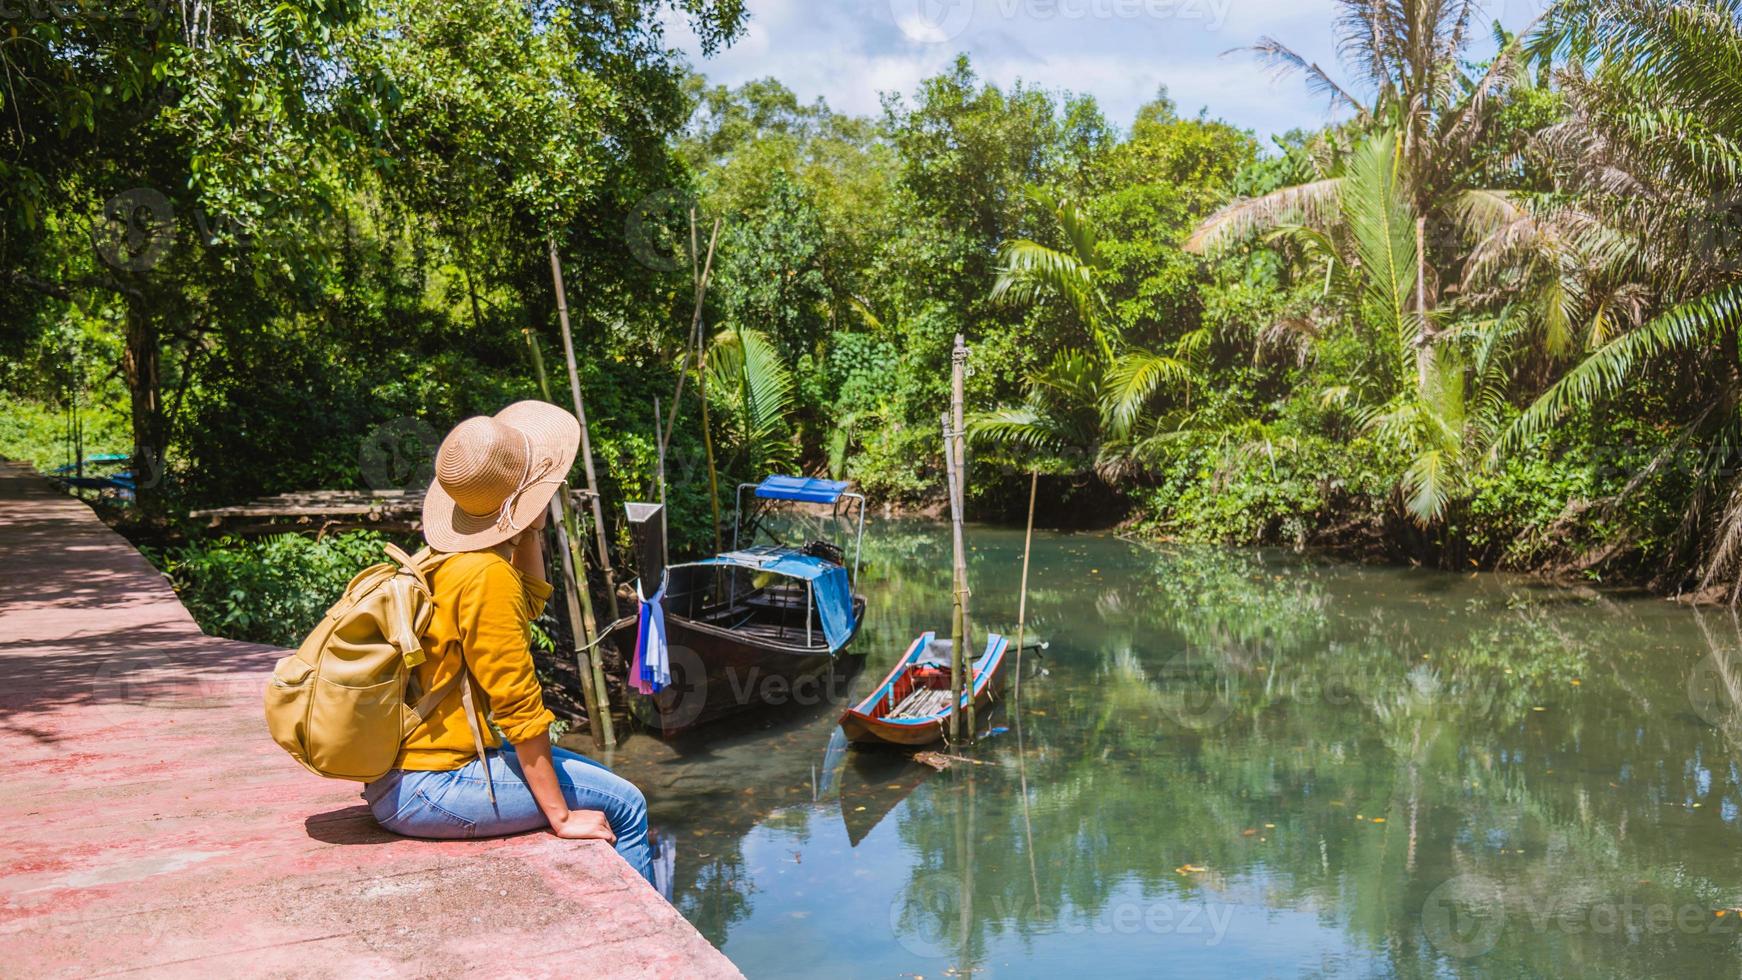 asiatische frau reisen natur. Reise relax.a Bootsfoto. sitzen und die schöne Natur bei tha pom-klong-song-nam beobachten. Krabi, in Thailand. foto